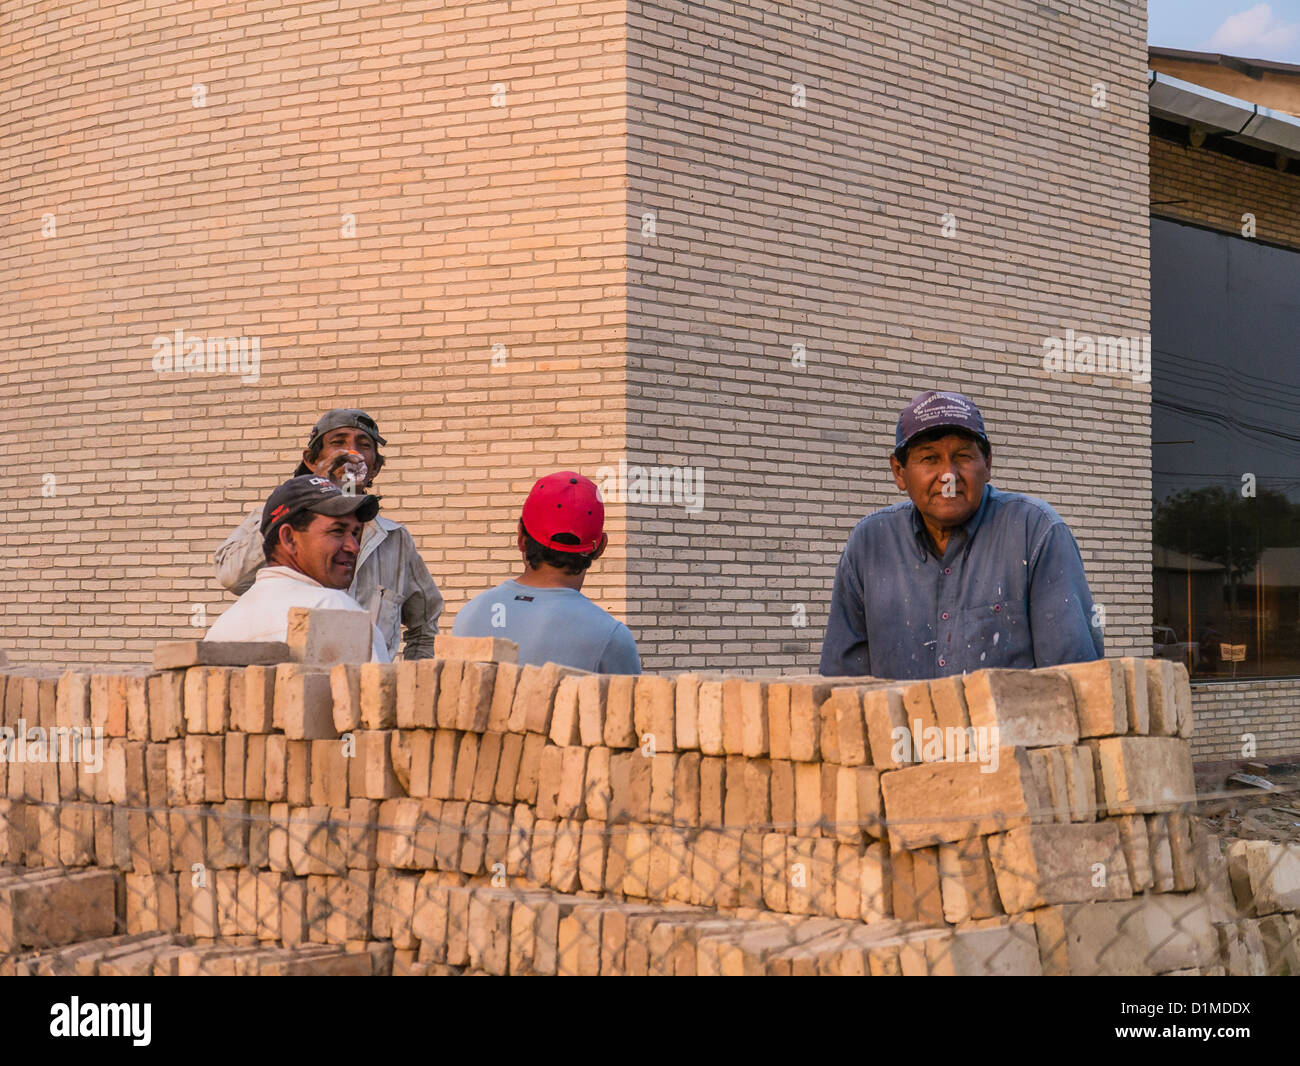 Vier Hispanic Bauarbeiter, Baseball Mützen tragen, stehen vor einer Baustelle in dieser Stadt mit einem starken deutschen Einflusses. Stockfoto